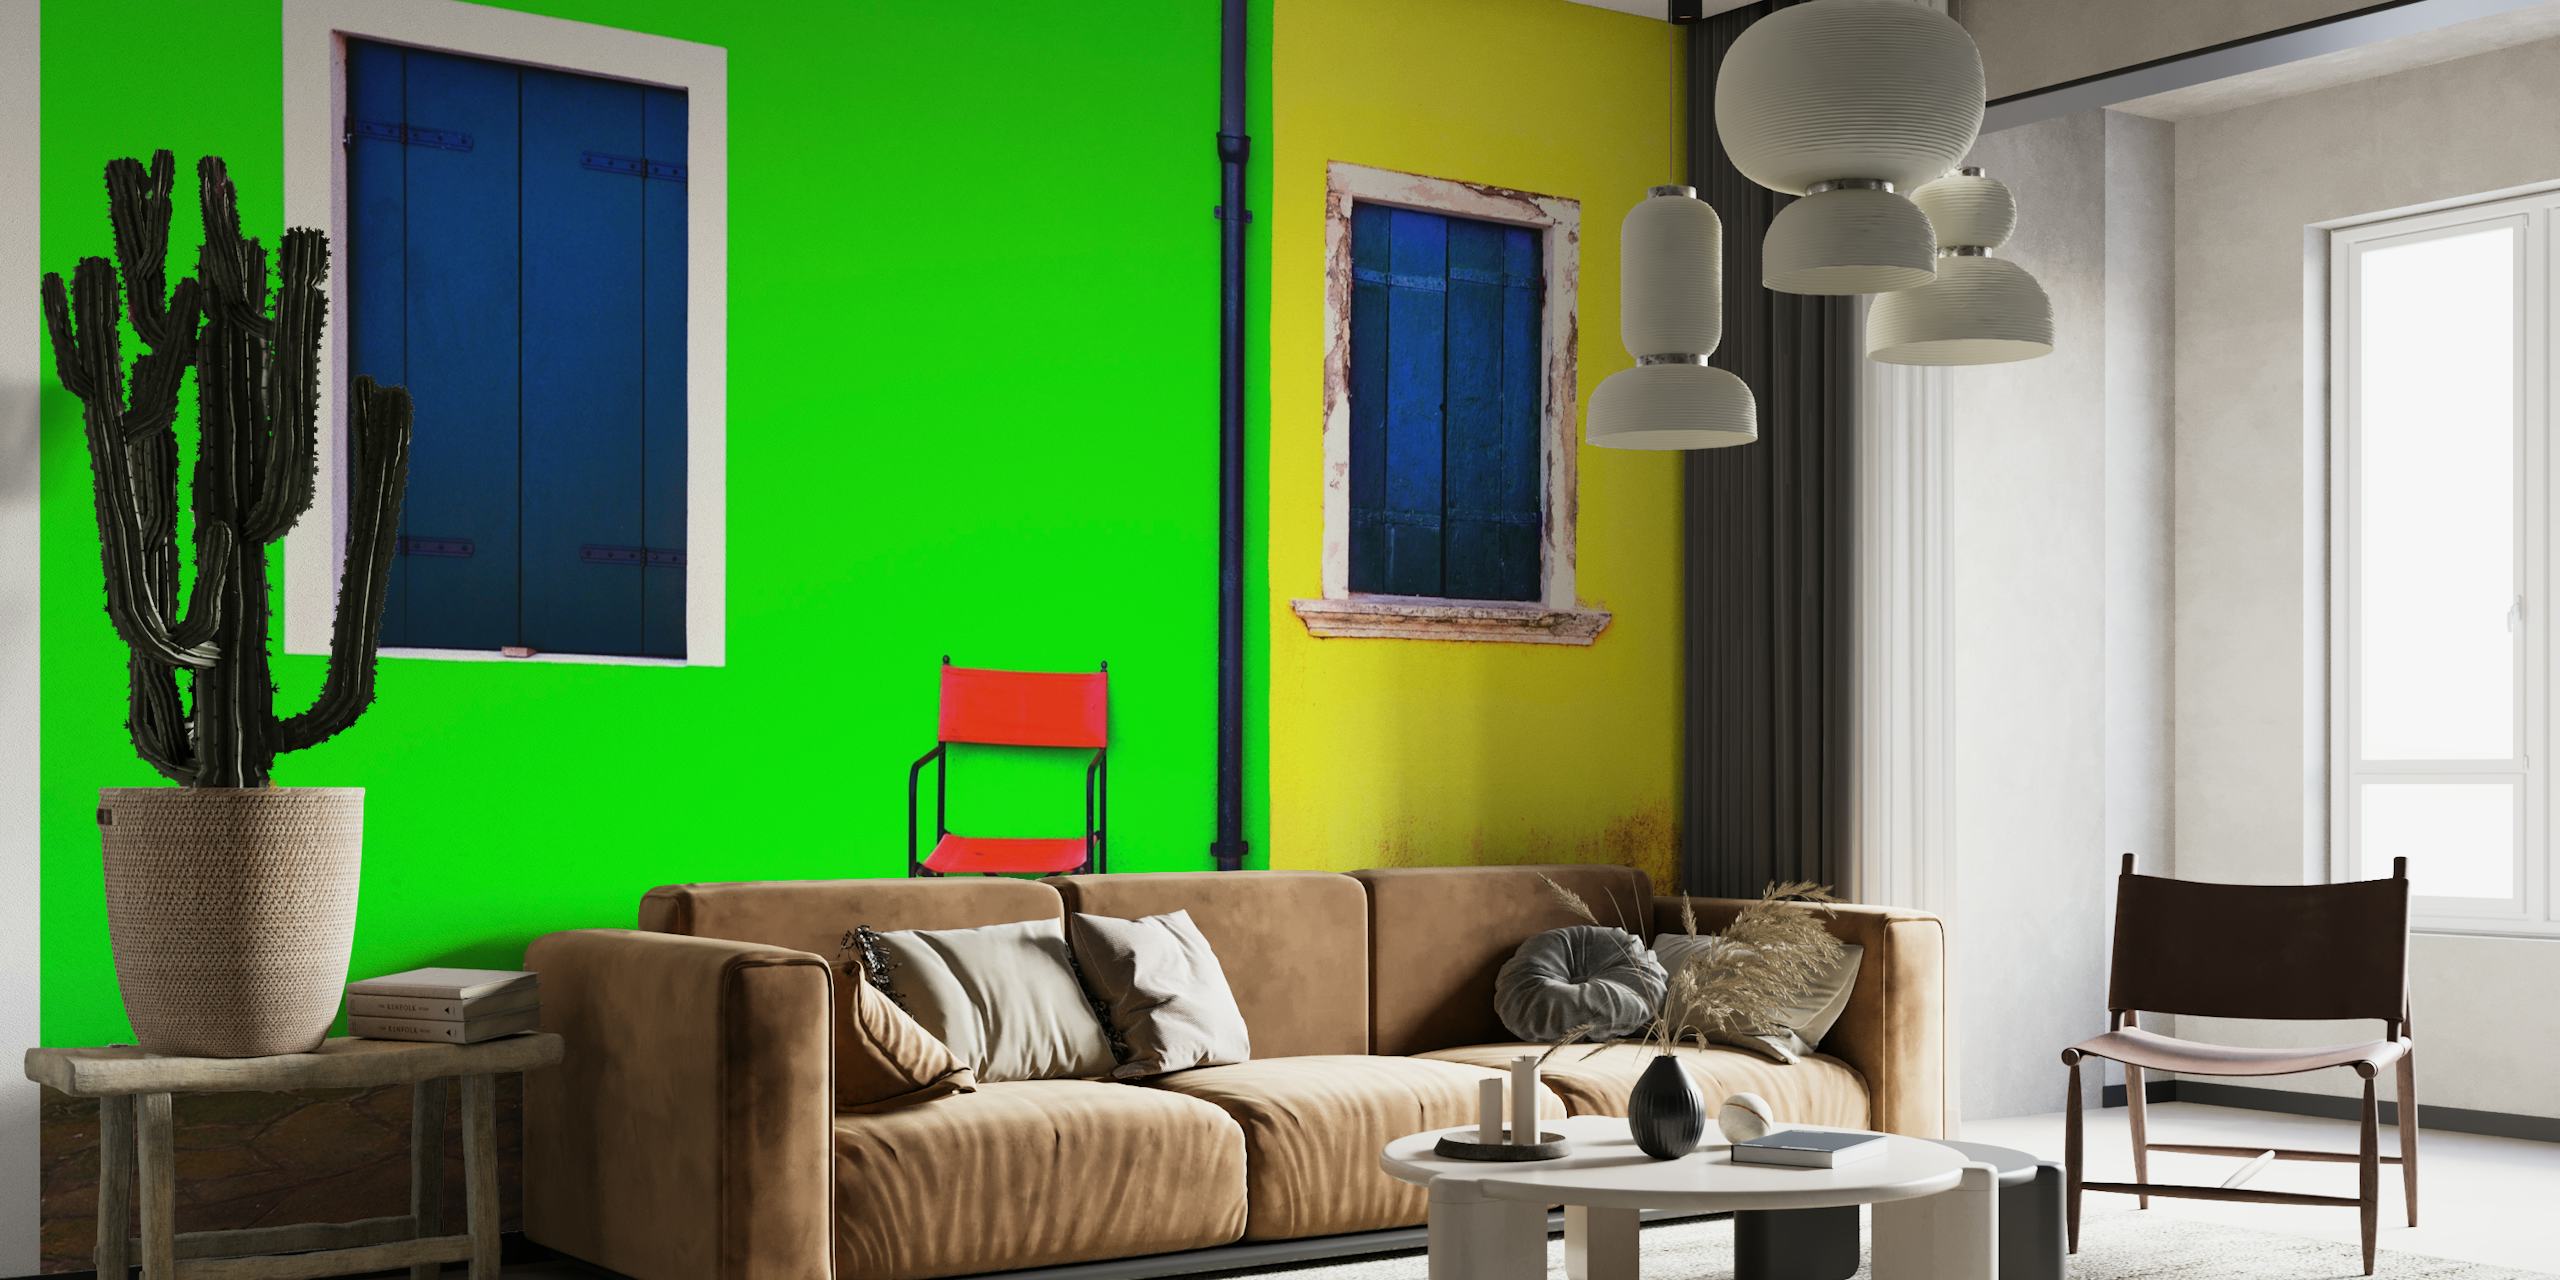 Markantes und minimalistisches Wandbild mit einer grünen Wand mit einem blauen Fenster, einer gelben Wand mit einem blauen Fenster und einem roten Stuhl